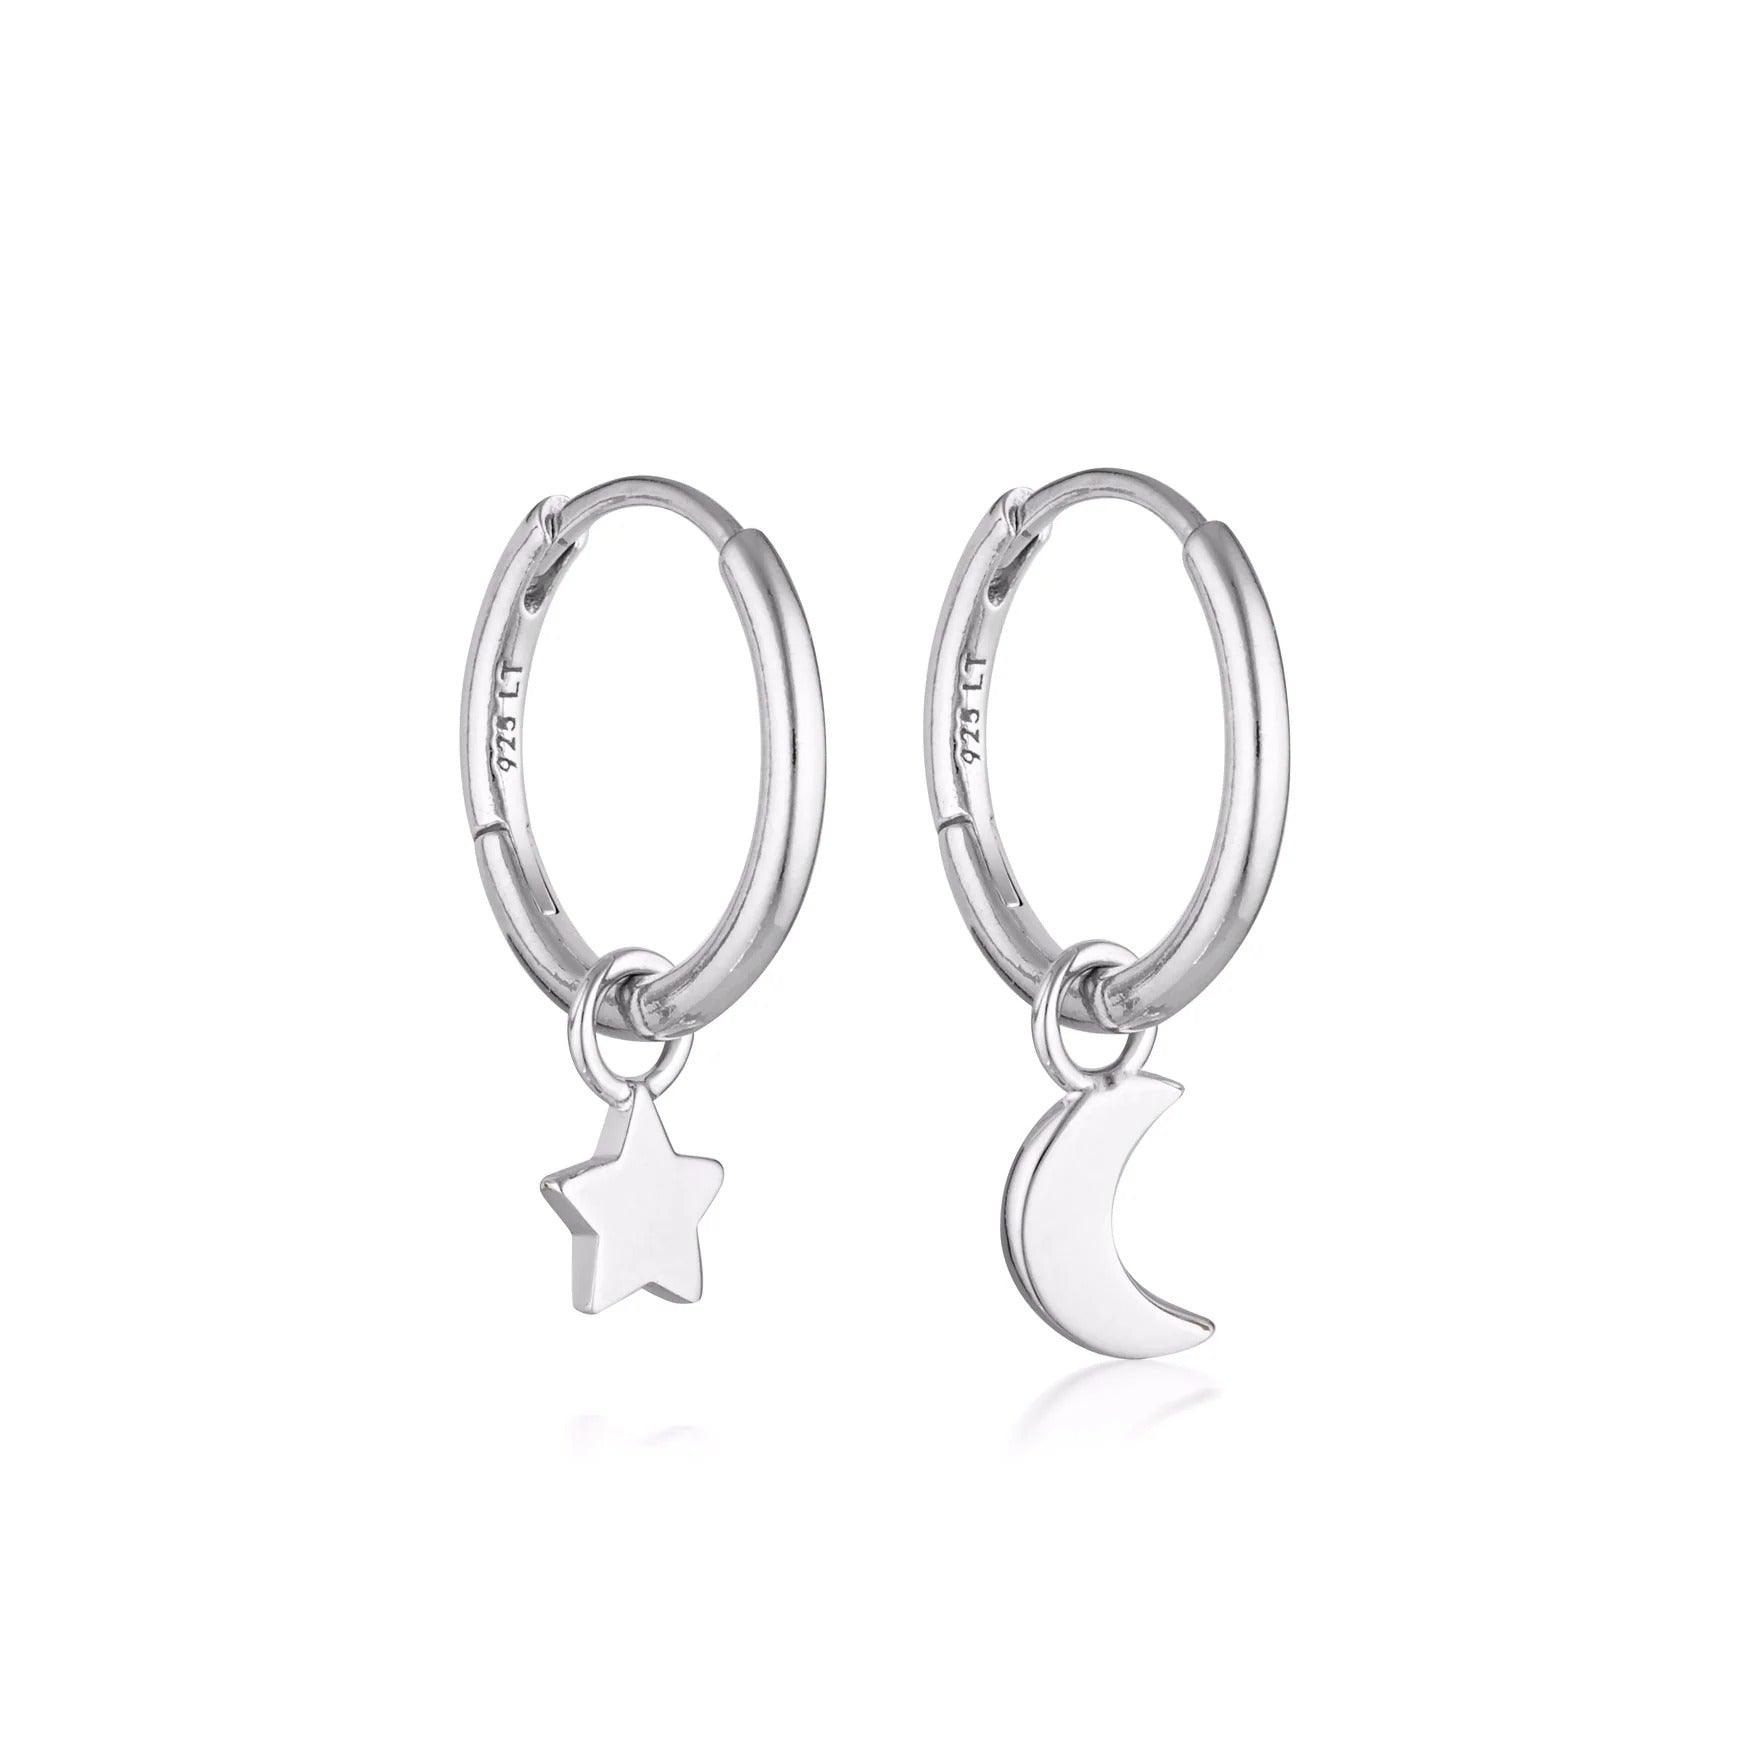 Linda Tahija Jewellery - Star & Moon Huggie Hoop Earrings - Sterling Silver - White & Co Living Accessories